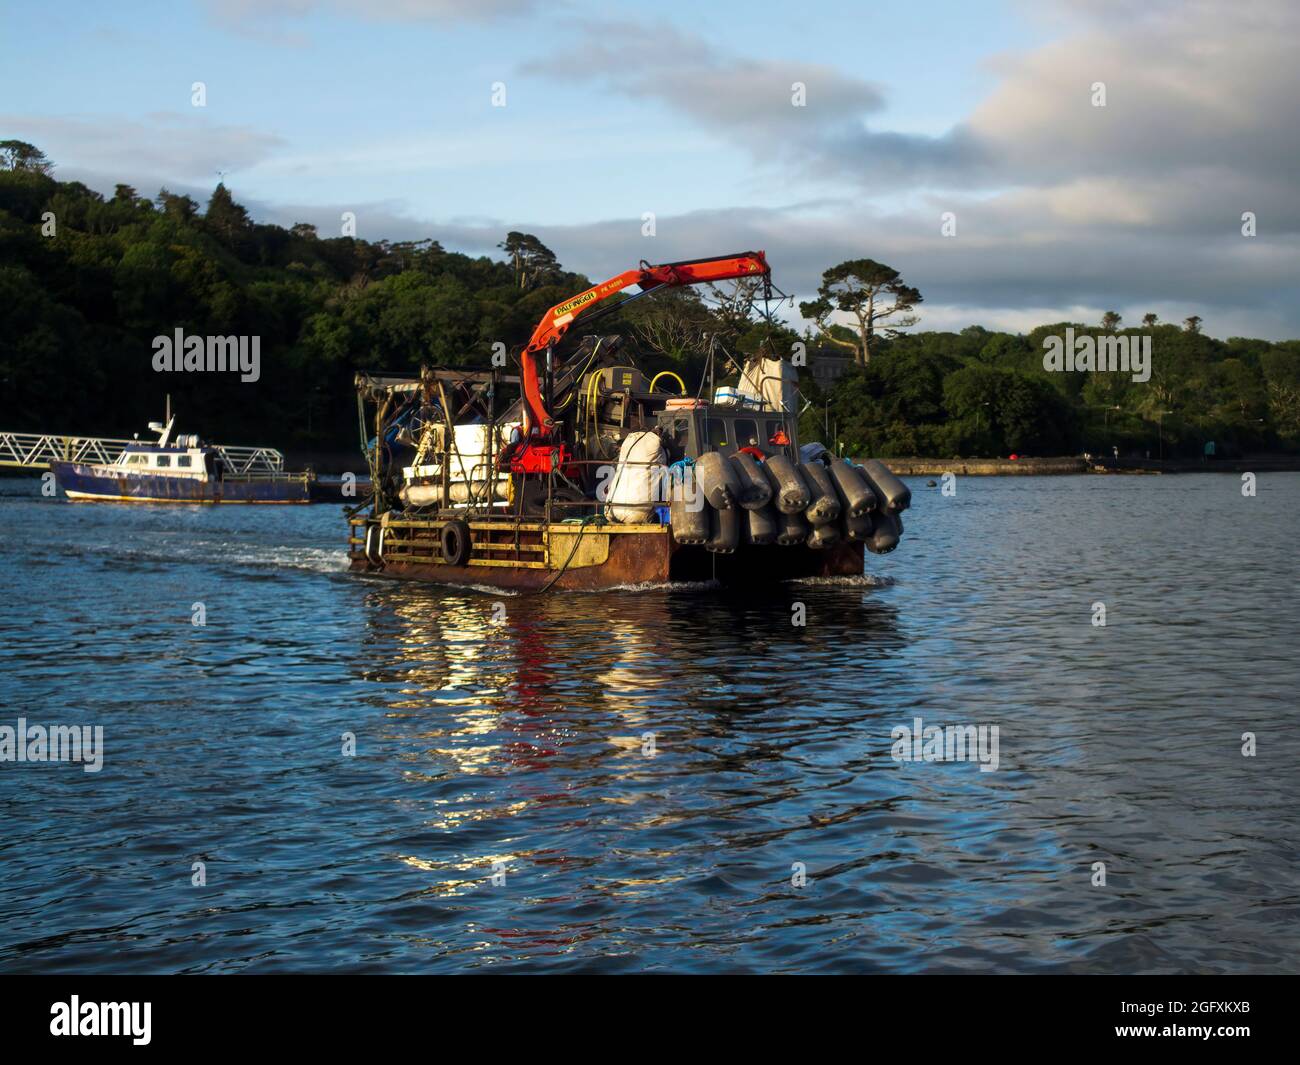 Le bateau de pêche se déplace vers la pêche sur les eaux profondes de la baie de Bantry, dans le comté de Cork, en Irlande. Banque D'Images